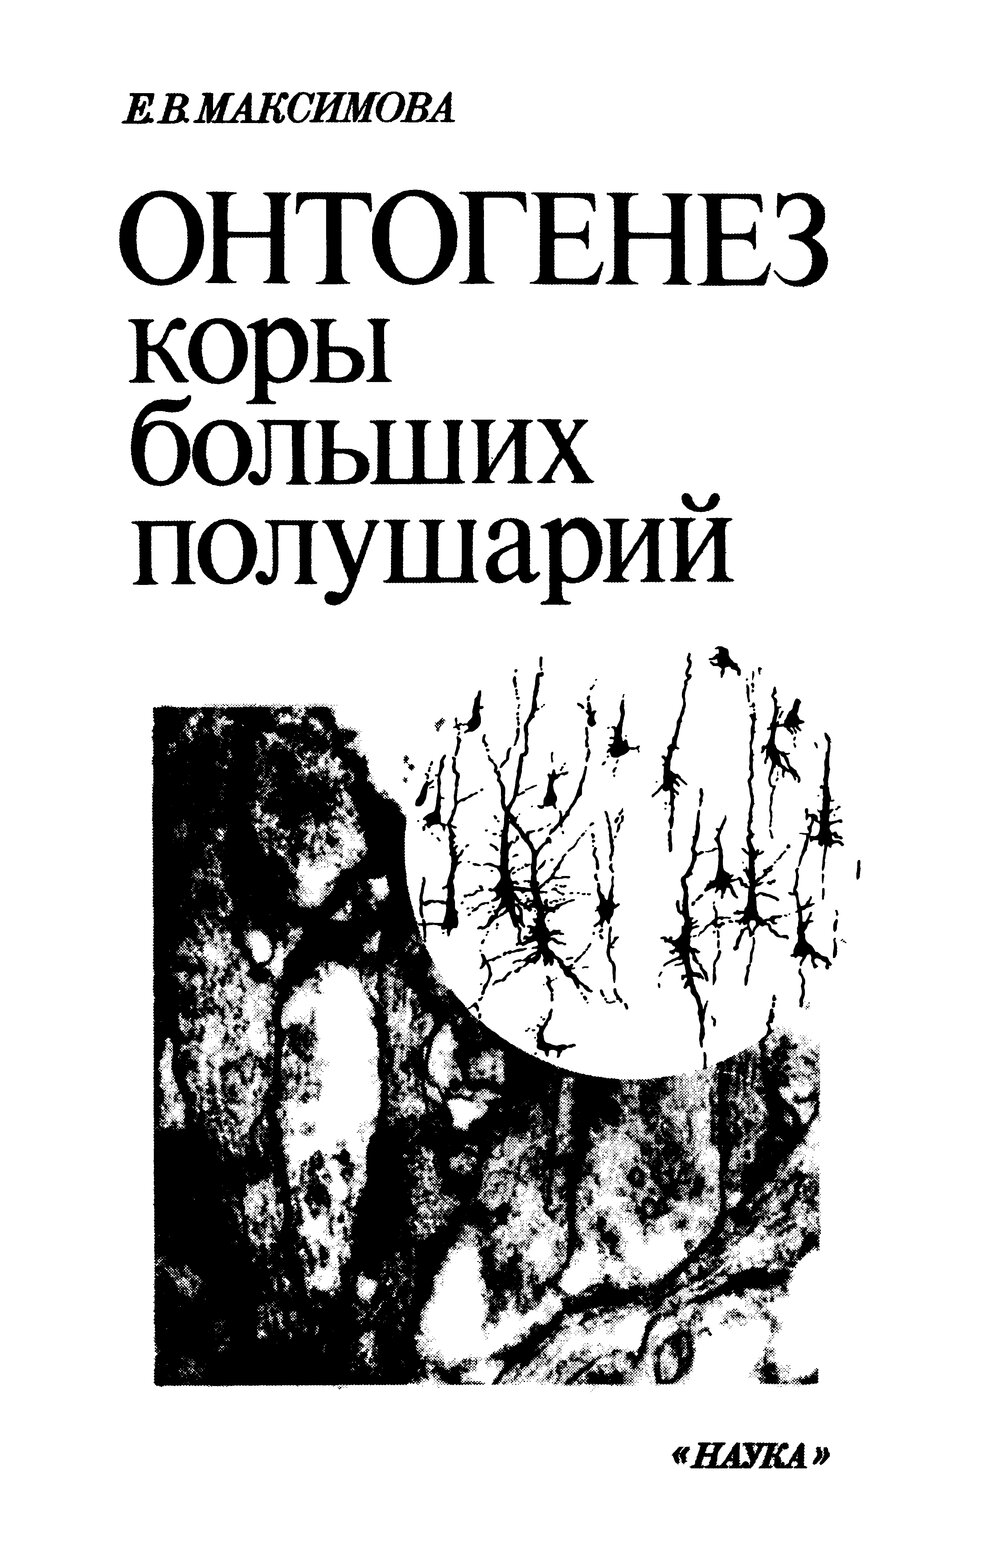 Обложка книги "Онтогенез коры больших полушарий"